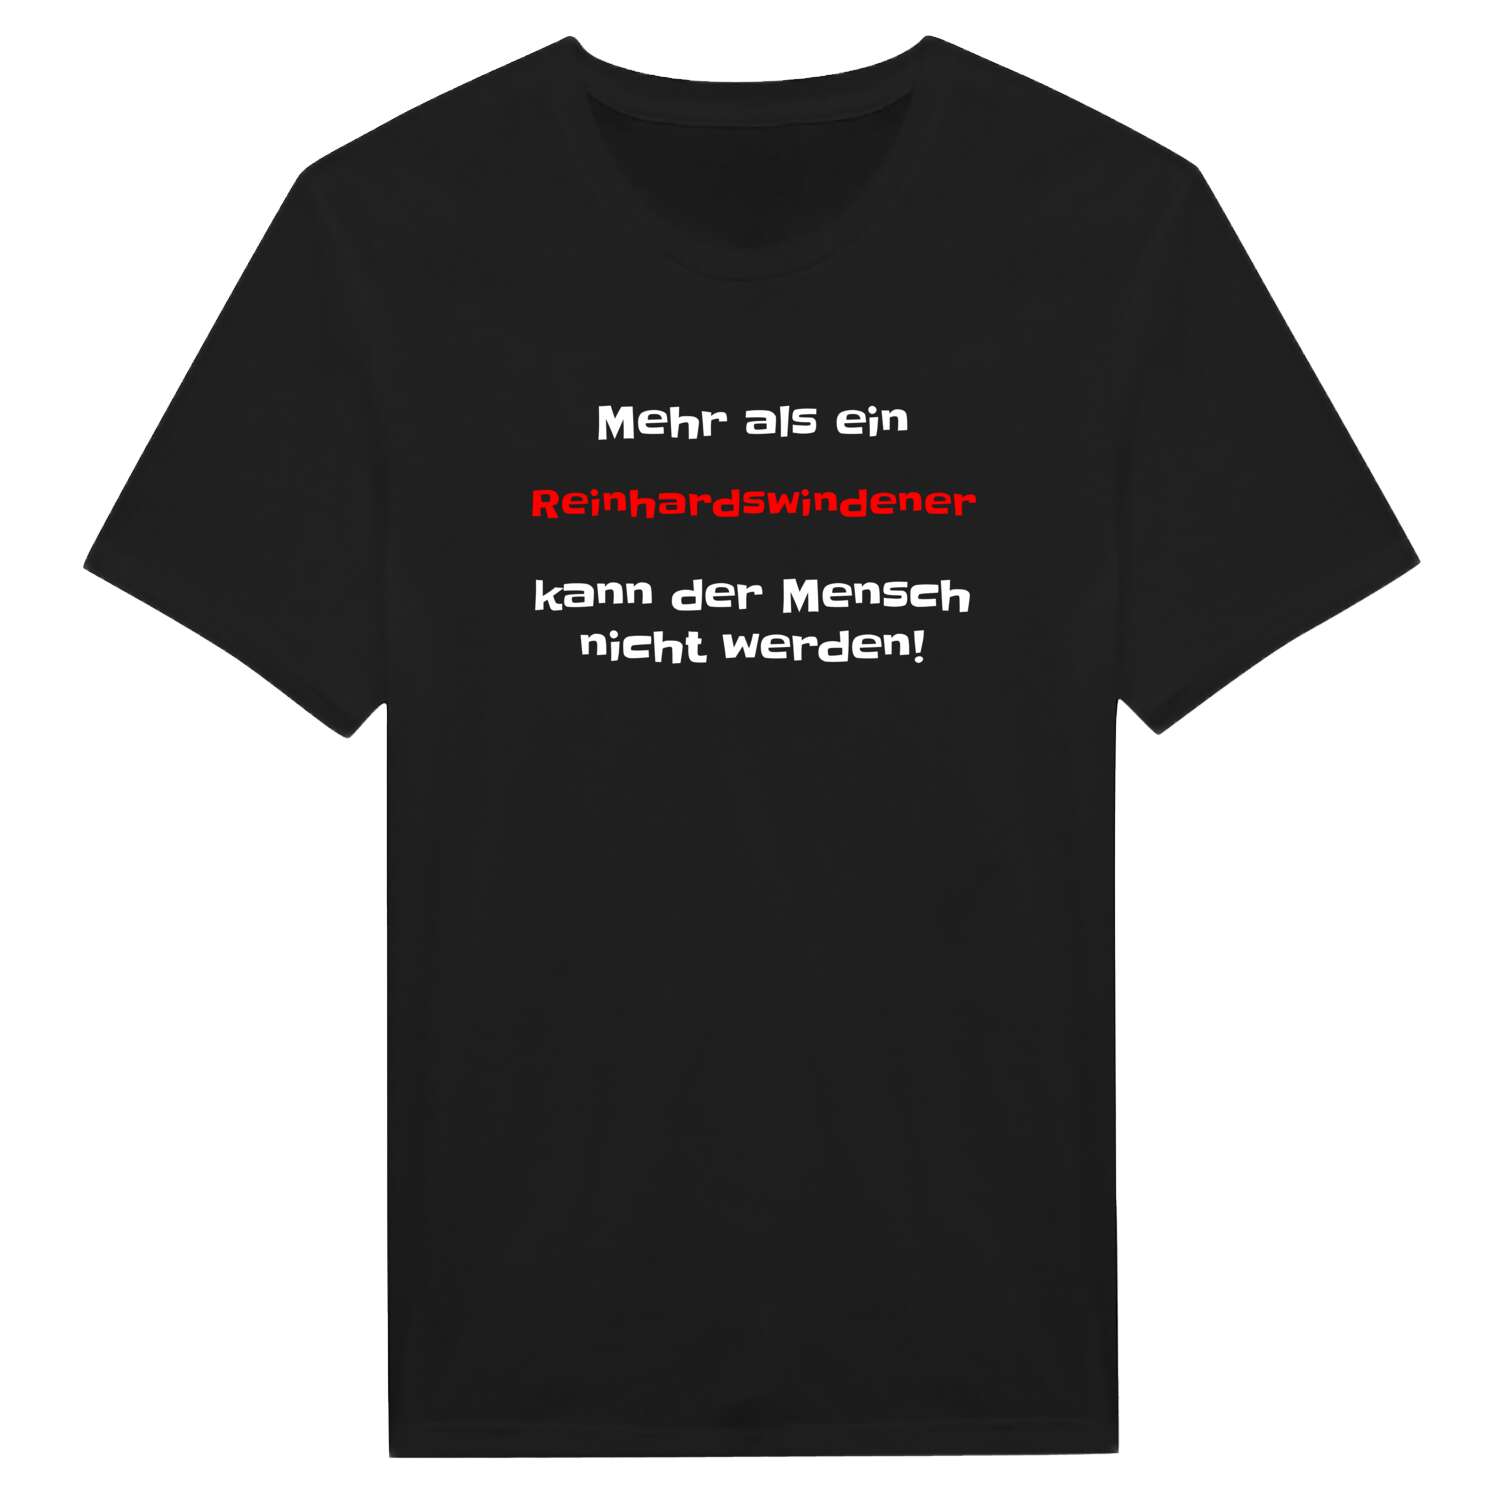 Reinhardswinden T-Shirt »Mehr als ein«